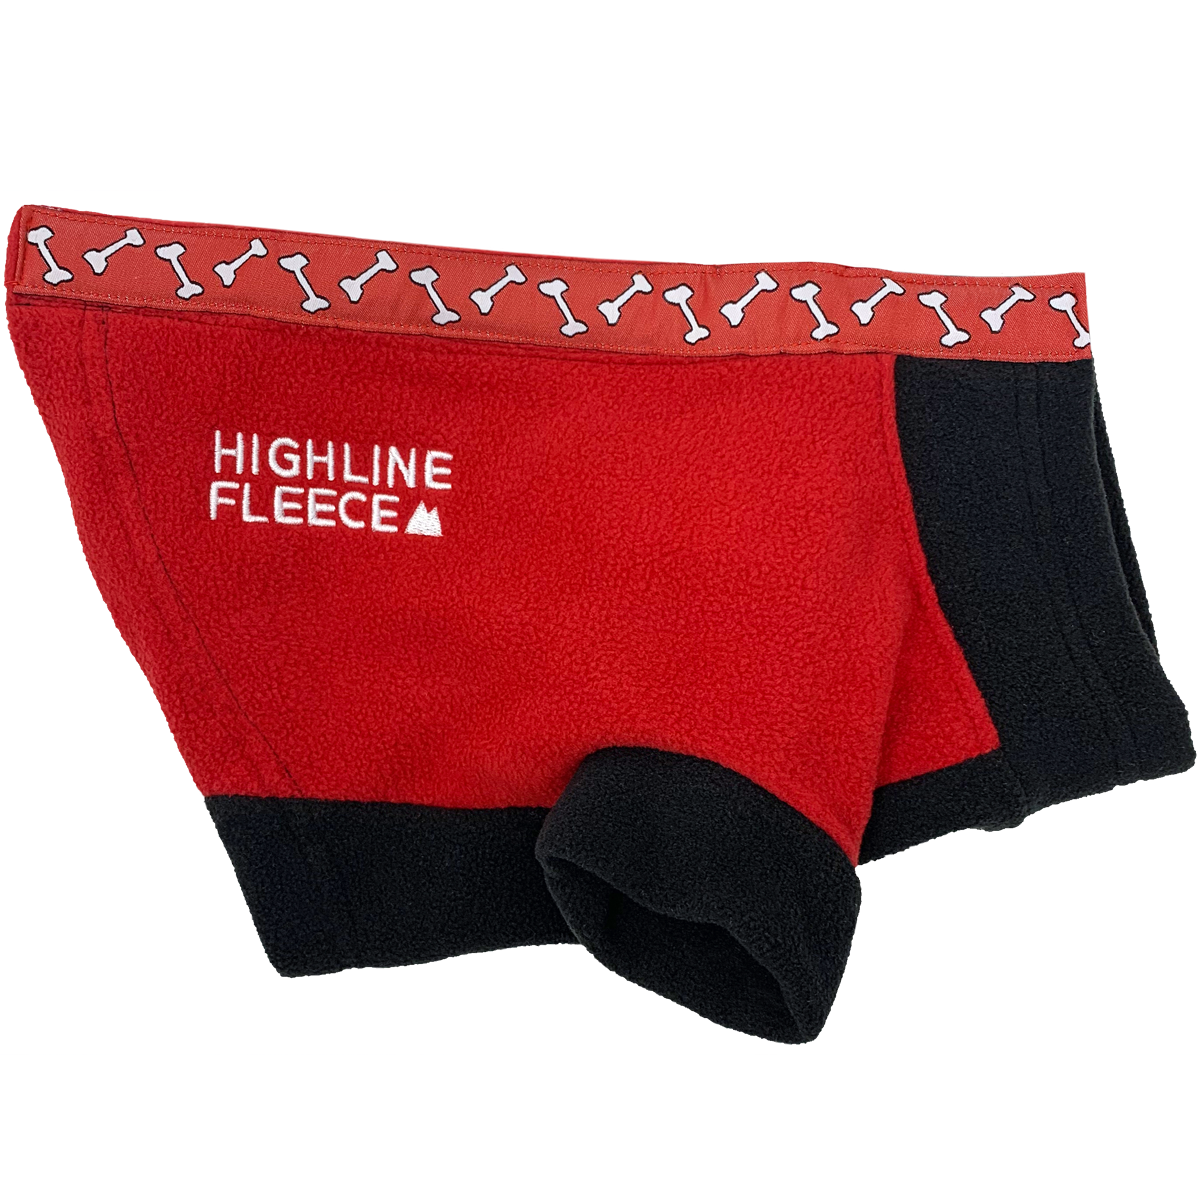 highline-fleece-dog-coat-red-black-with-rolling-bones-2602.png